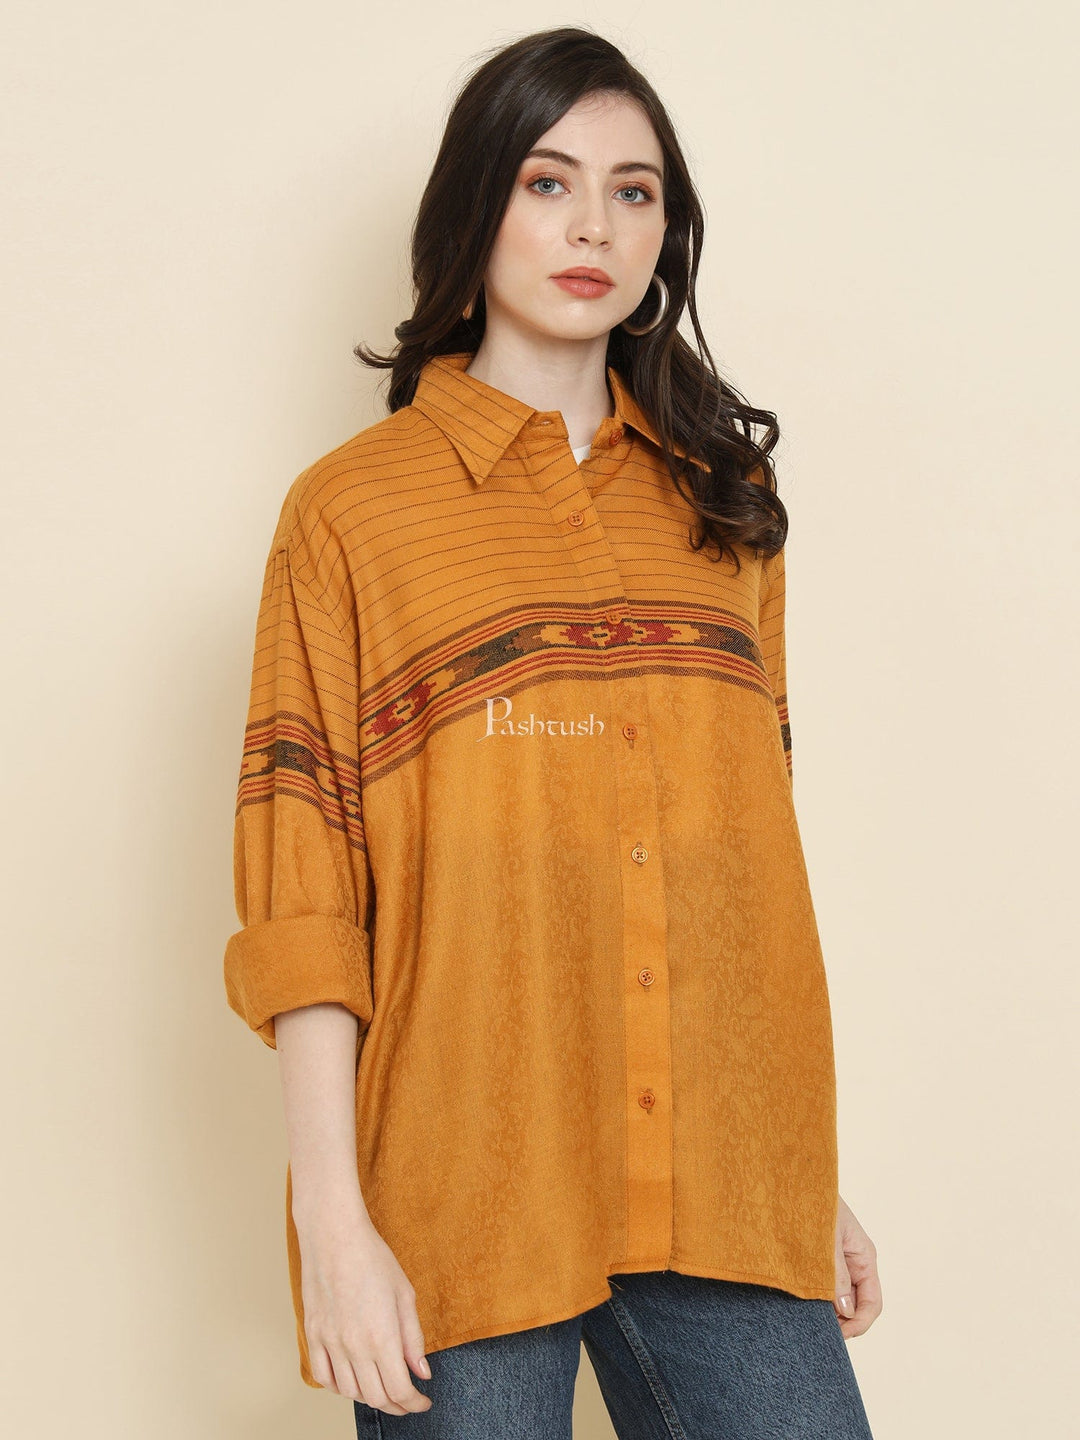 Pashtush India Womens Shirt Pashtush Womens Oversized Casual Woollen Shirt, Mustard